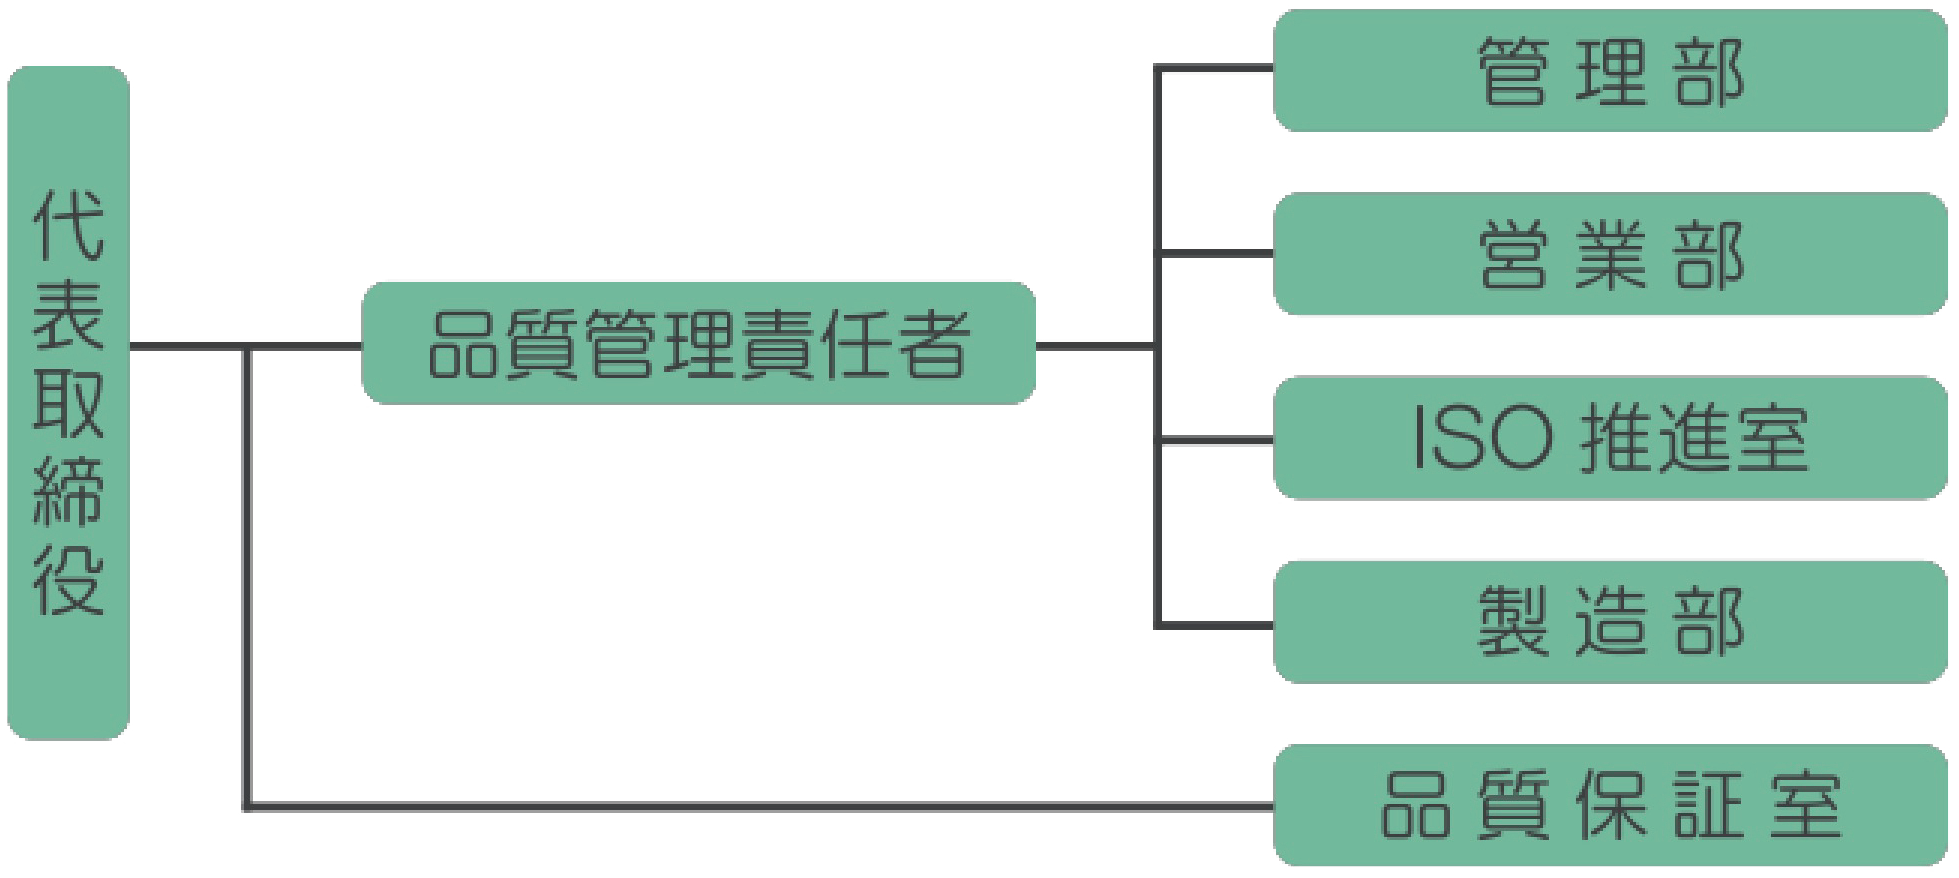 吉田喜九州の組織図 代表取締役 品質管理責任者 管理部 営業部 ISO推進室 製造部 品質保証室